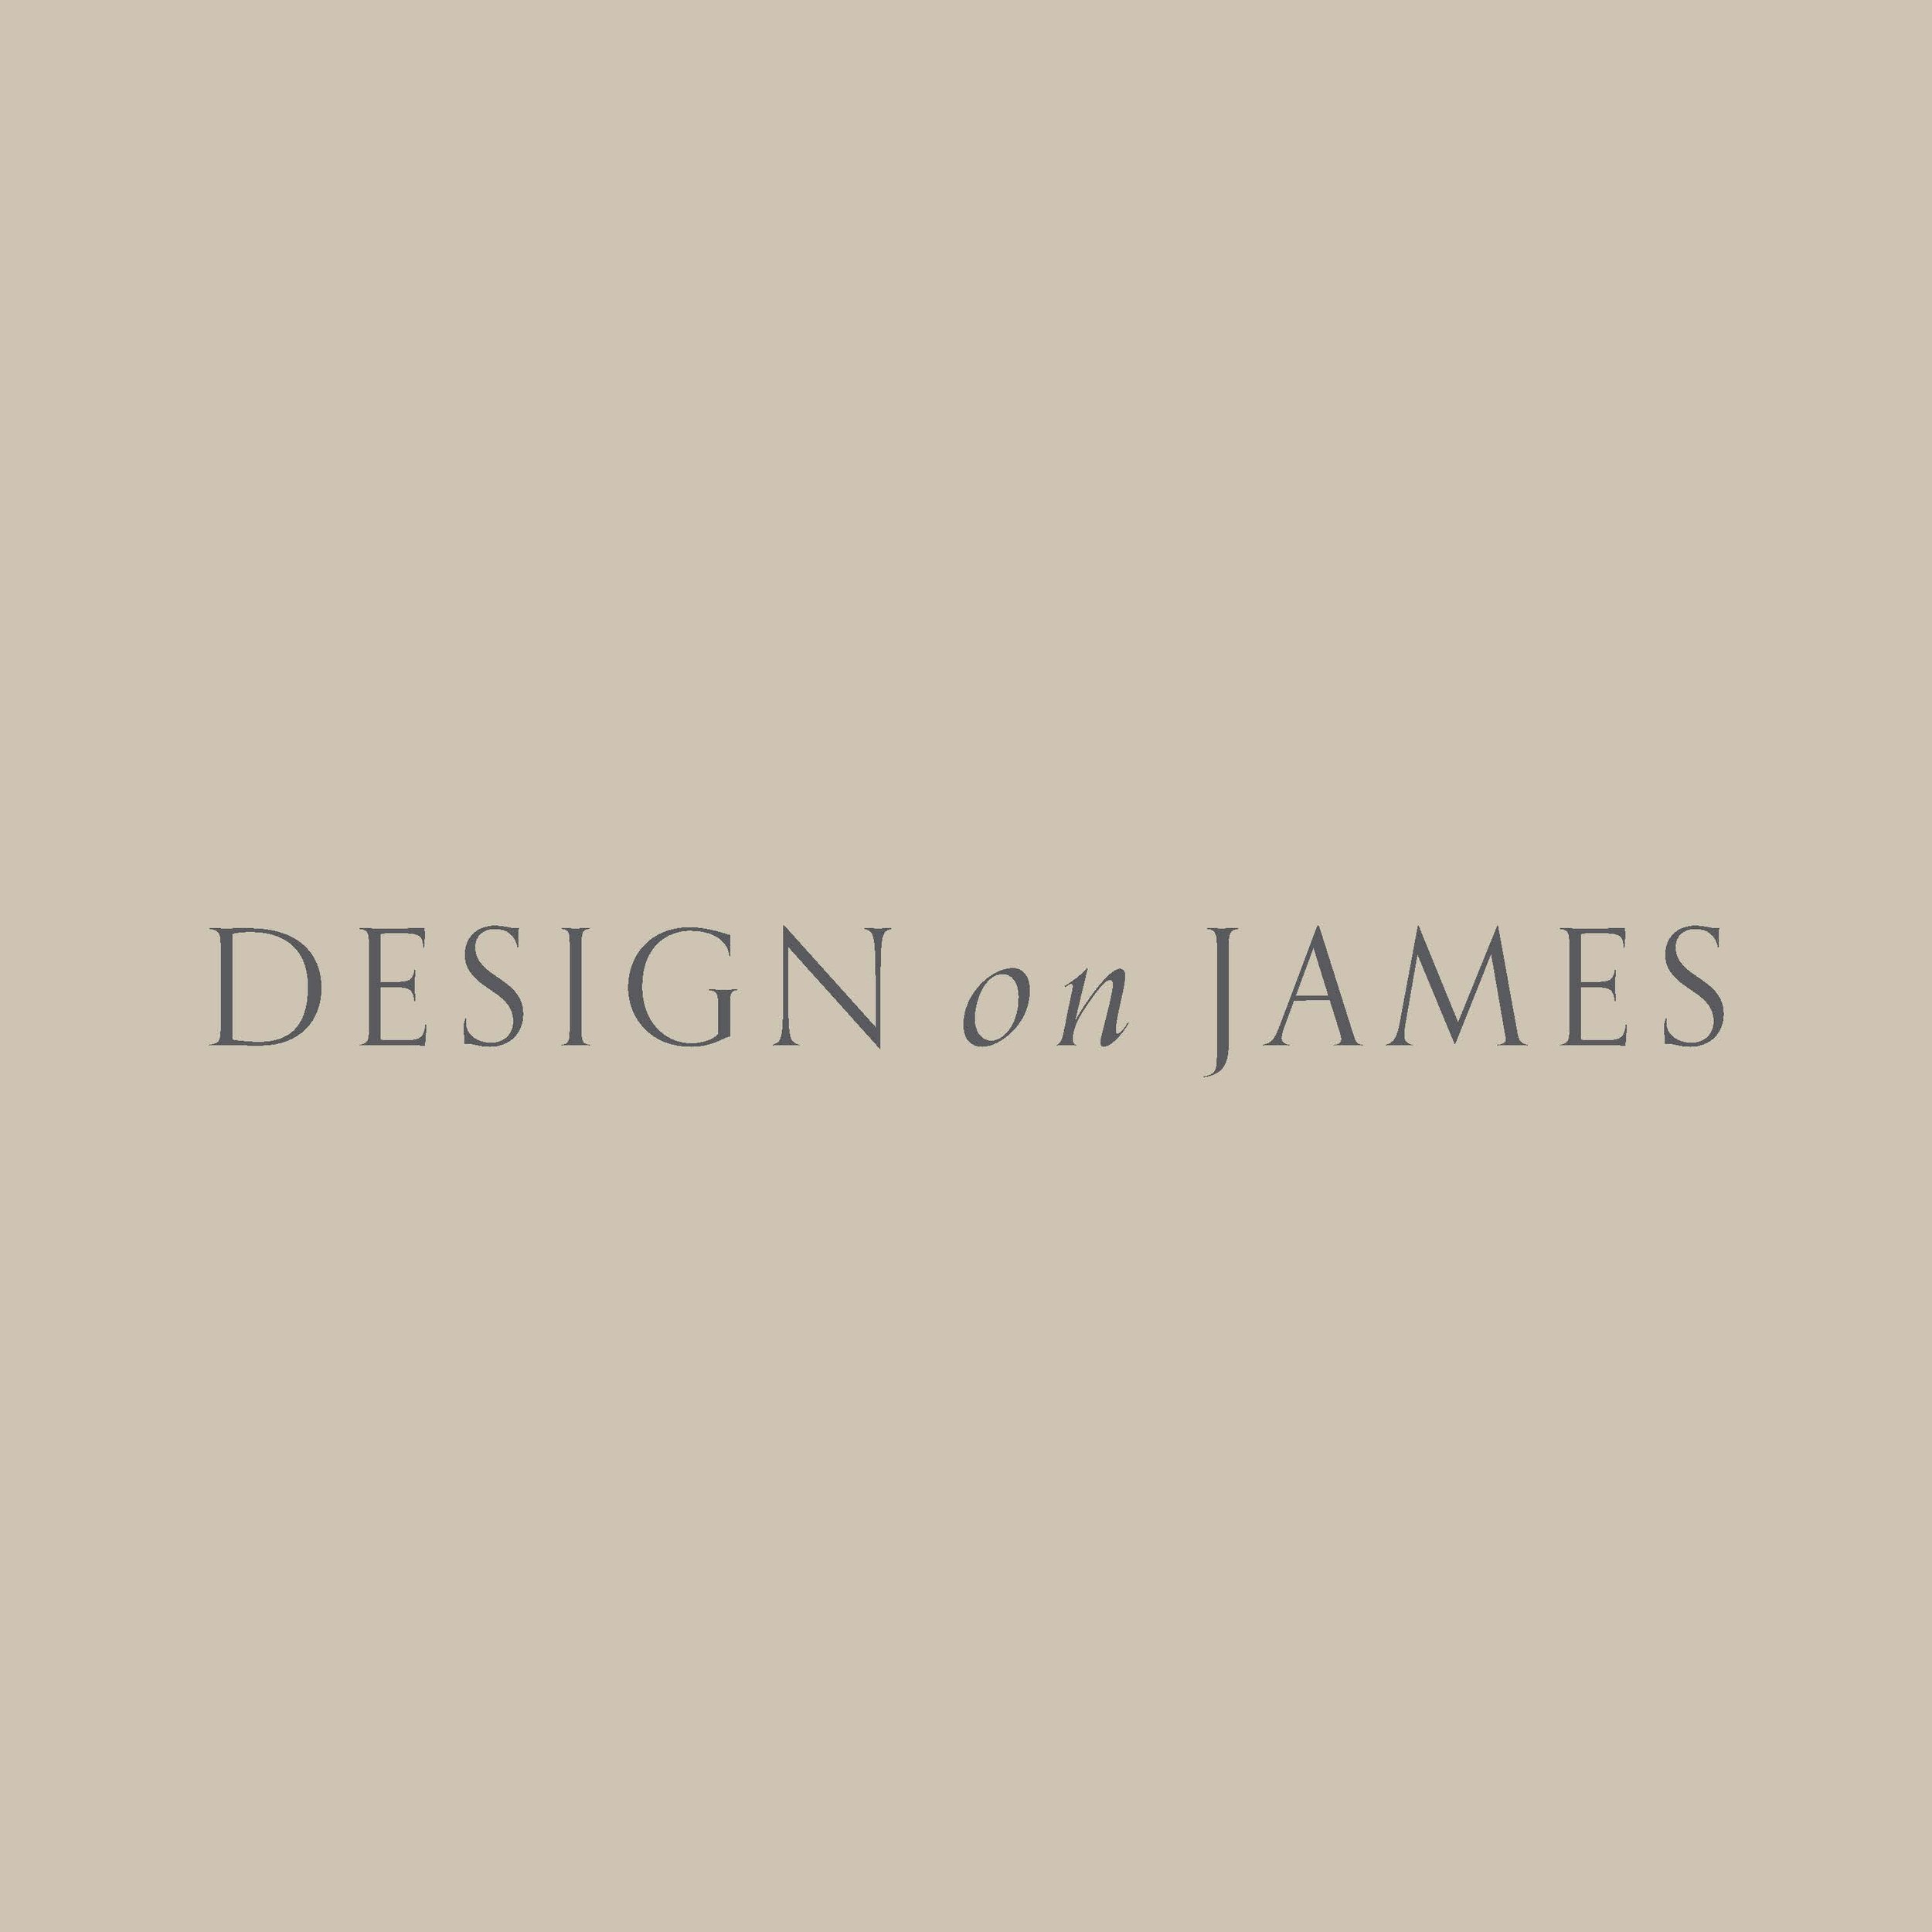 Design_on_James_Page_2.jpg